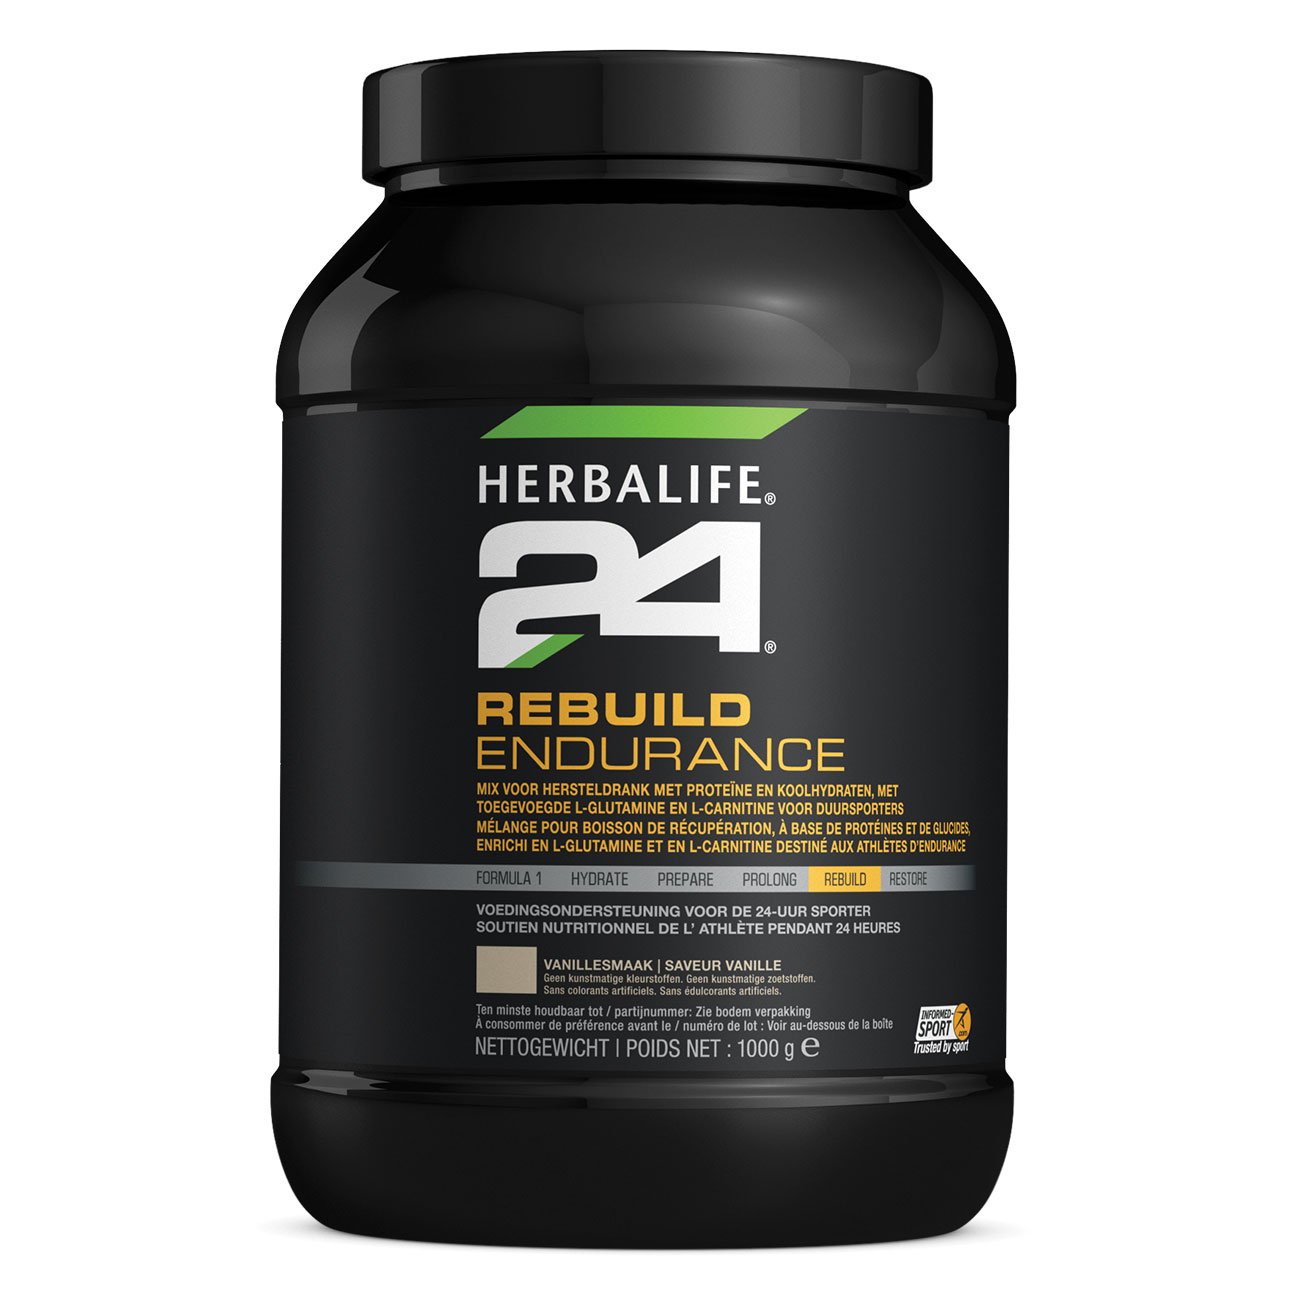 Herbalife24® Rebuild Endurance Boisson glucidique de récupération Vanille product shot